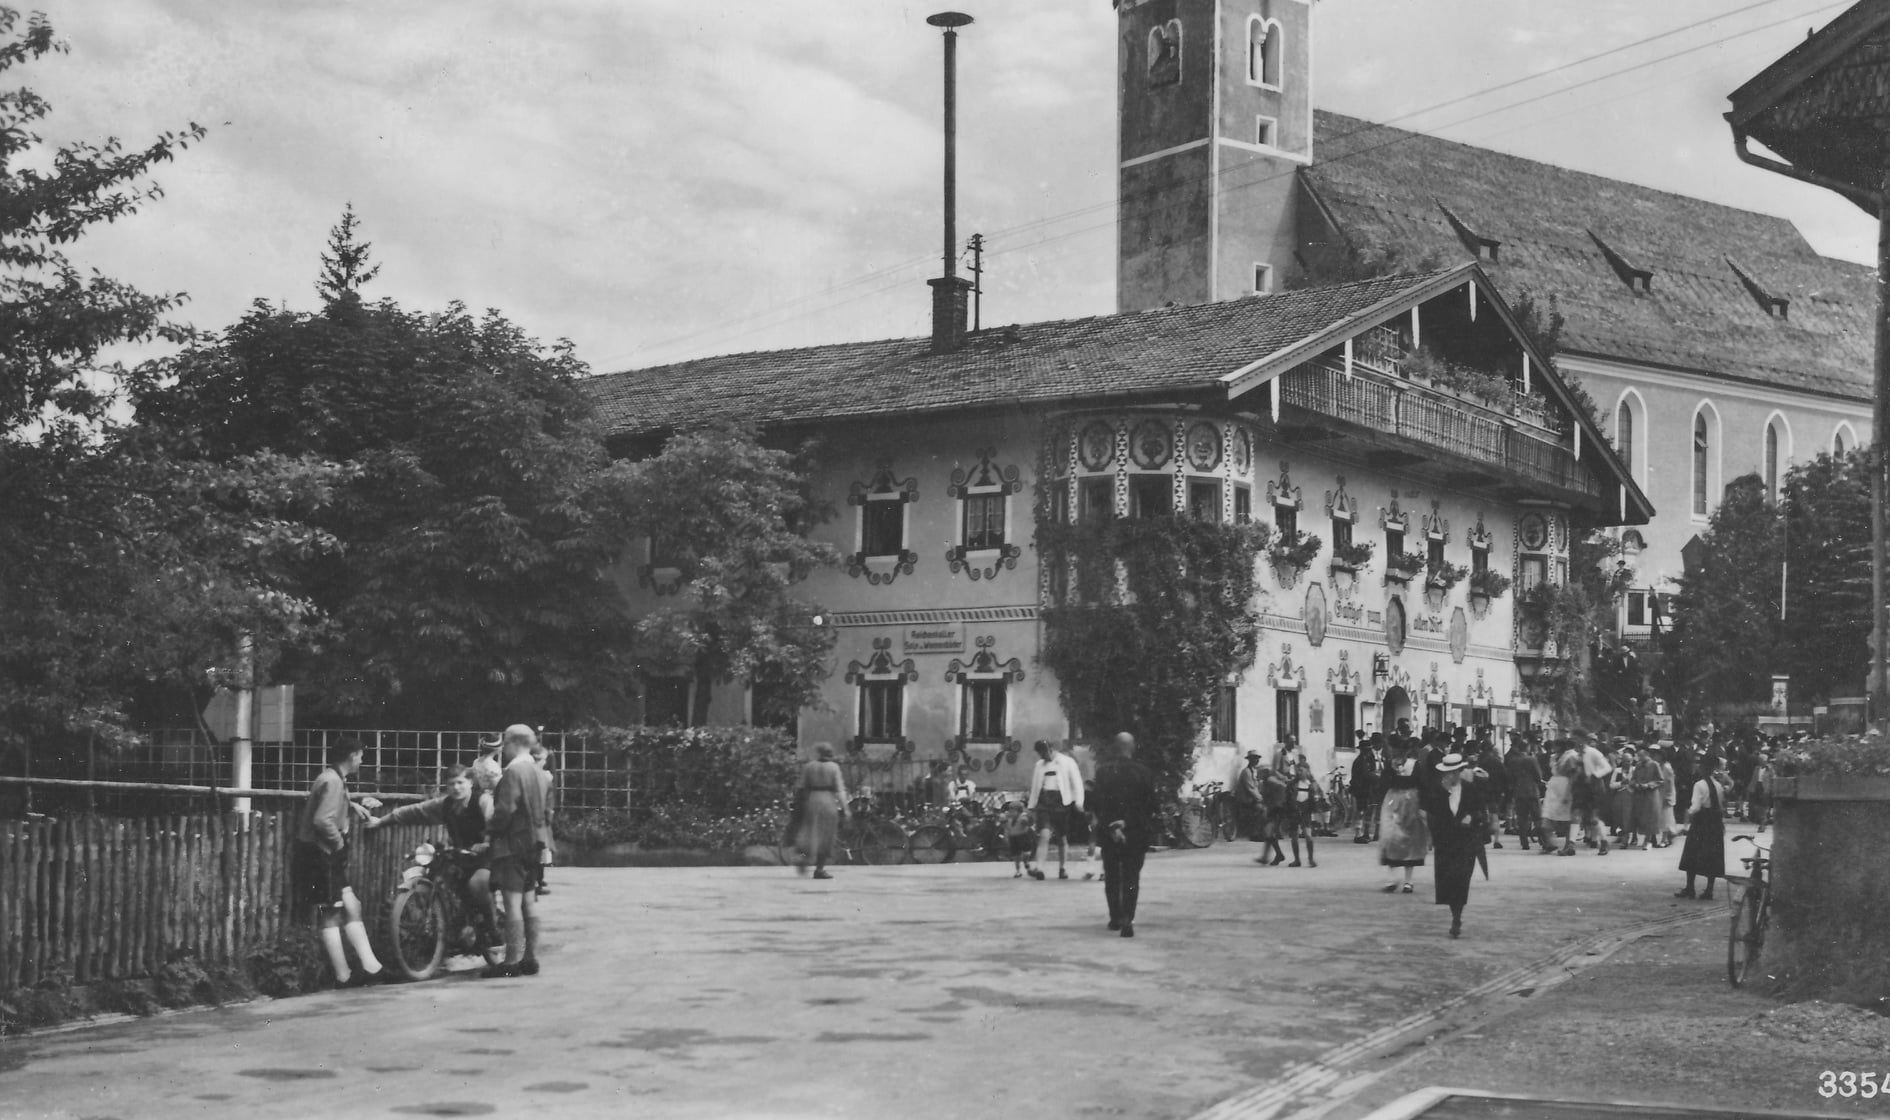 Schwarz-weiss-Aufnahme. Hintergrund Kirche, davor ein Bauernhaus. Auf der Dorfstraße gehen viele Menschen in Tracht. Links am Zaun stehen ein paar junge Burschen in Lederhosen mit einem Motorrad.